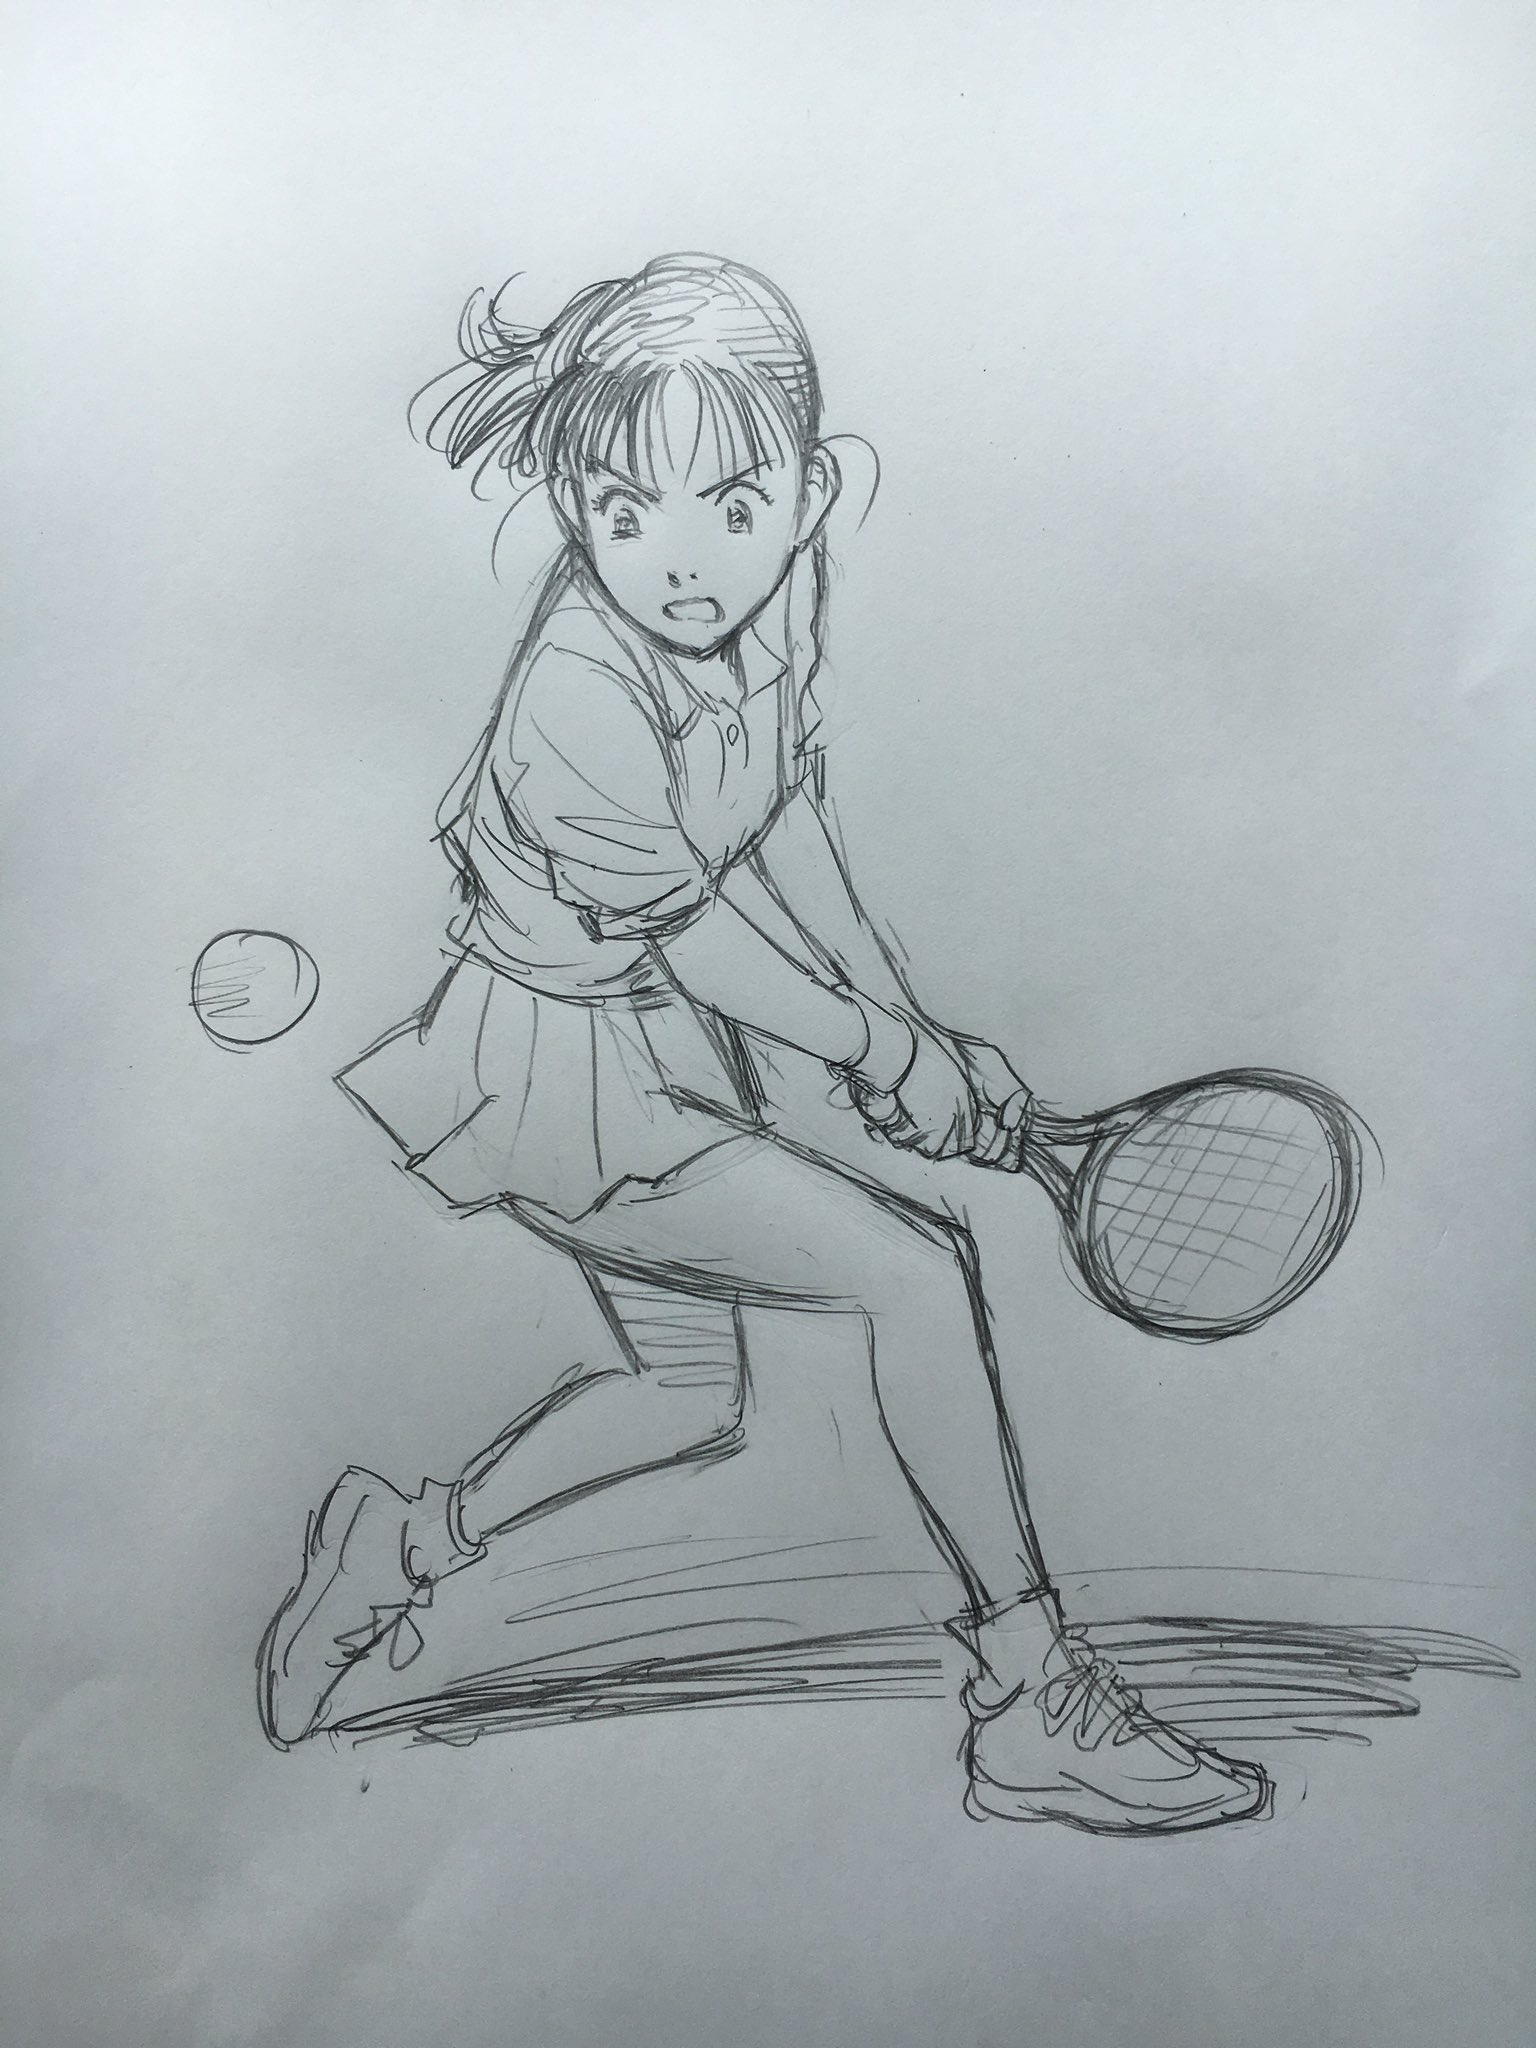 浦沢直樹 Naoki Urasawa公式情報 伊達公子さん Happy の海野幸を描きながら あなたの戦いにどれほど触発されたことでしょう テニスの素晴らしさを教えて下さってありがとう 最後の試合のあともチャレンジは続きますね